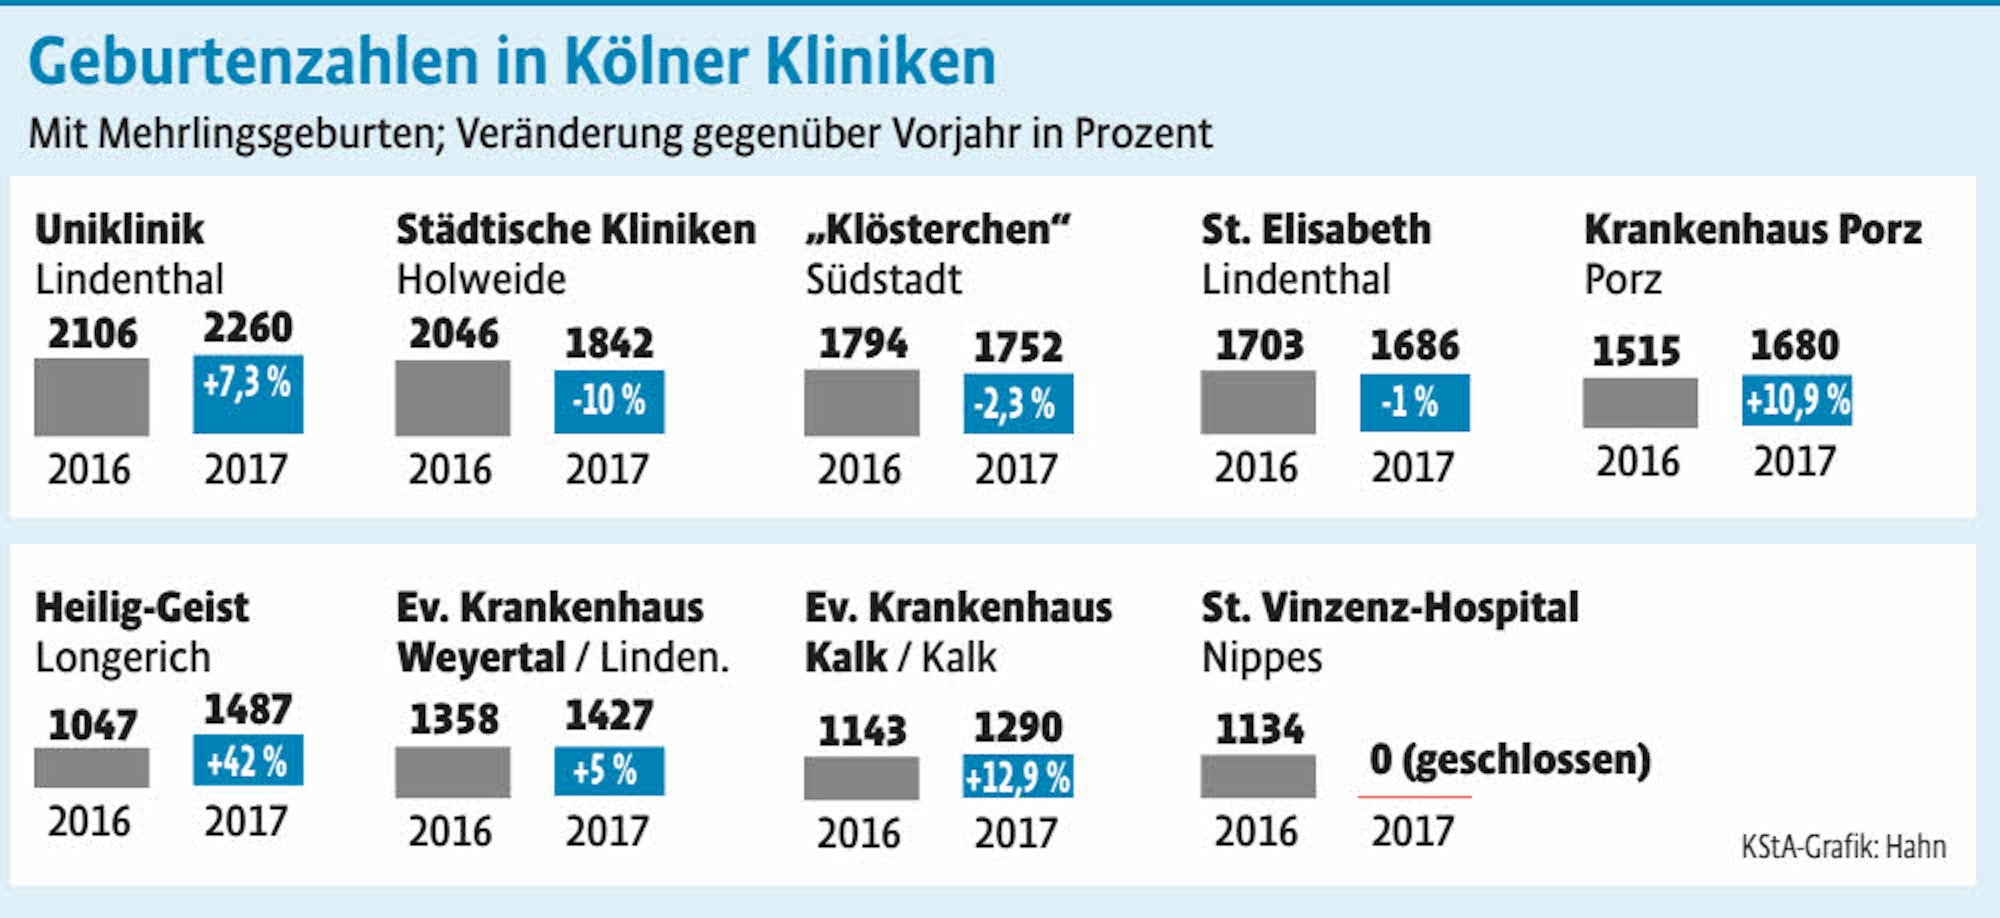 Geburtenzahlen in Kölner Kliniken, inklusive Mehrlingsgeburten